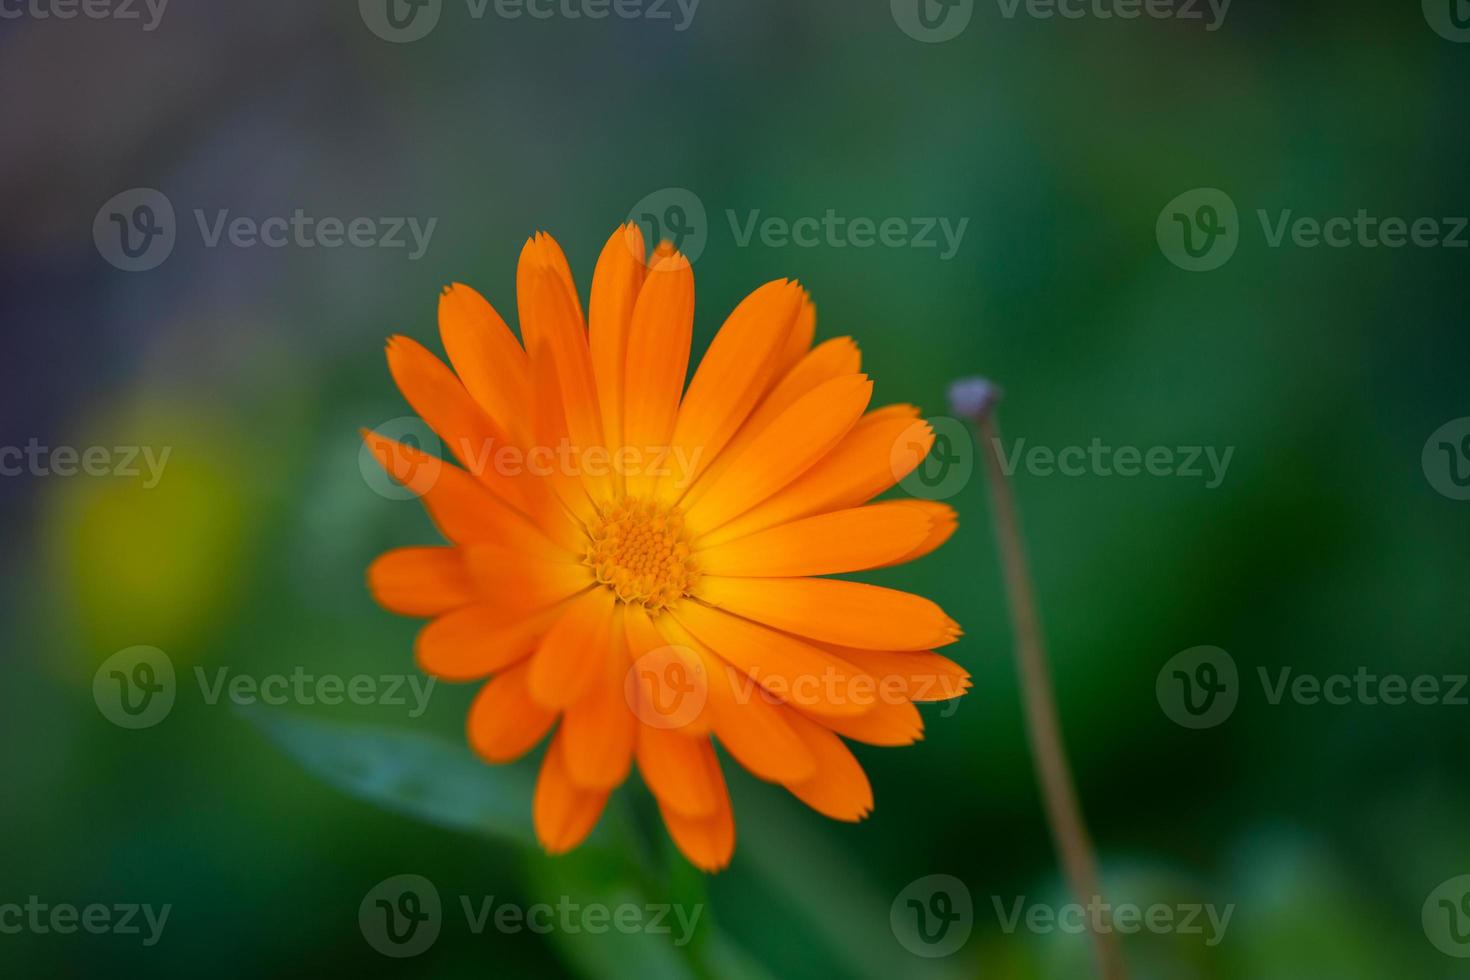 ljus orange ringblomma blomma på en grön bakgrund i en sommar trädgård makrofotografi. orange kamomill närbild foto på en sommardag. botanisk fotografi av en trädgårdsblomma med orange kronblad.